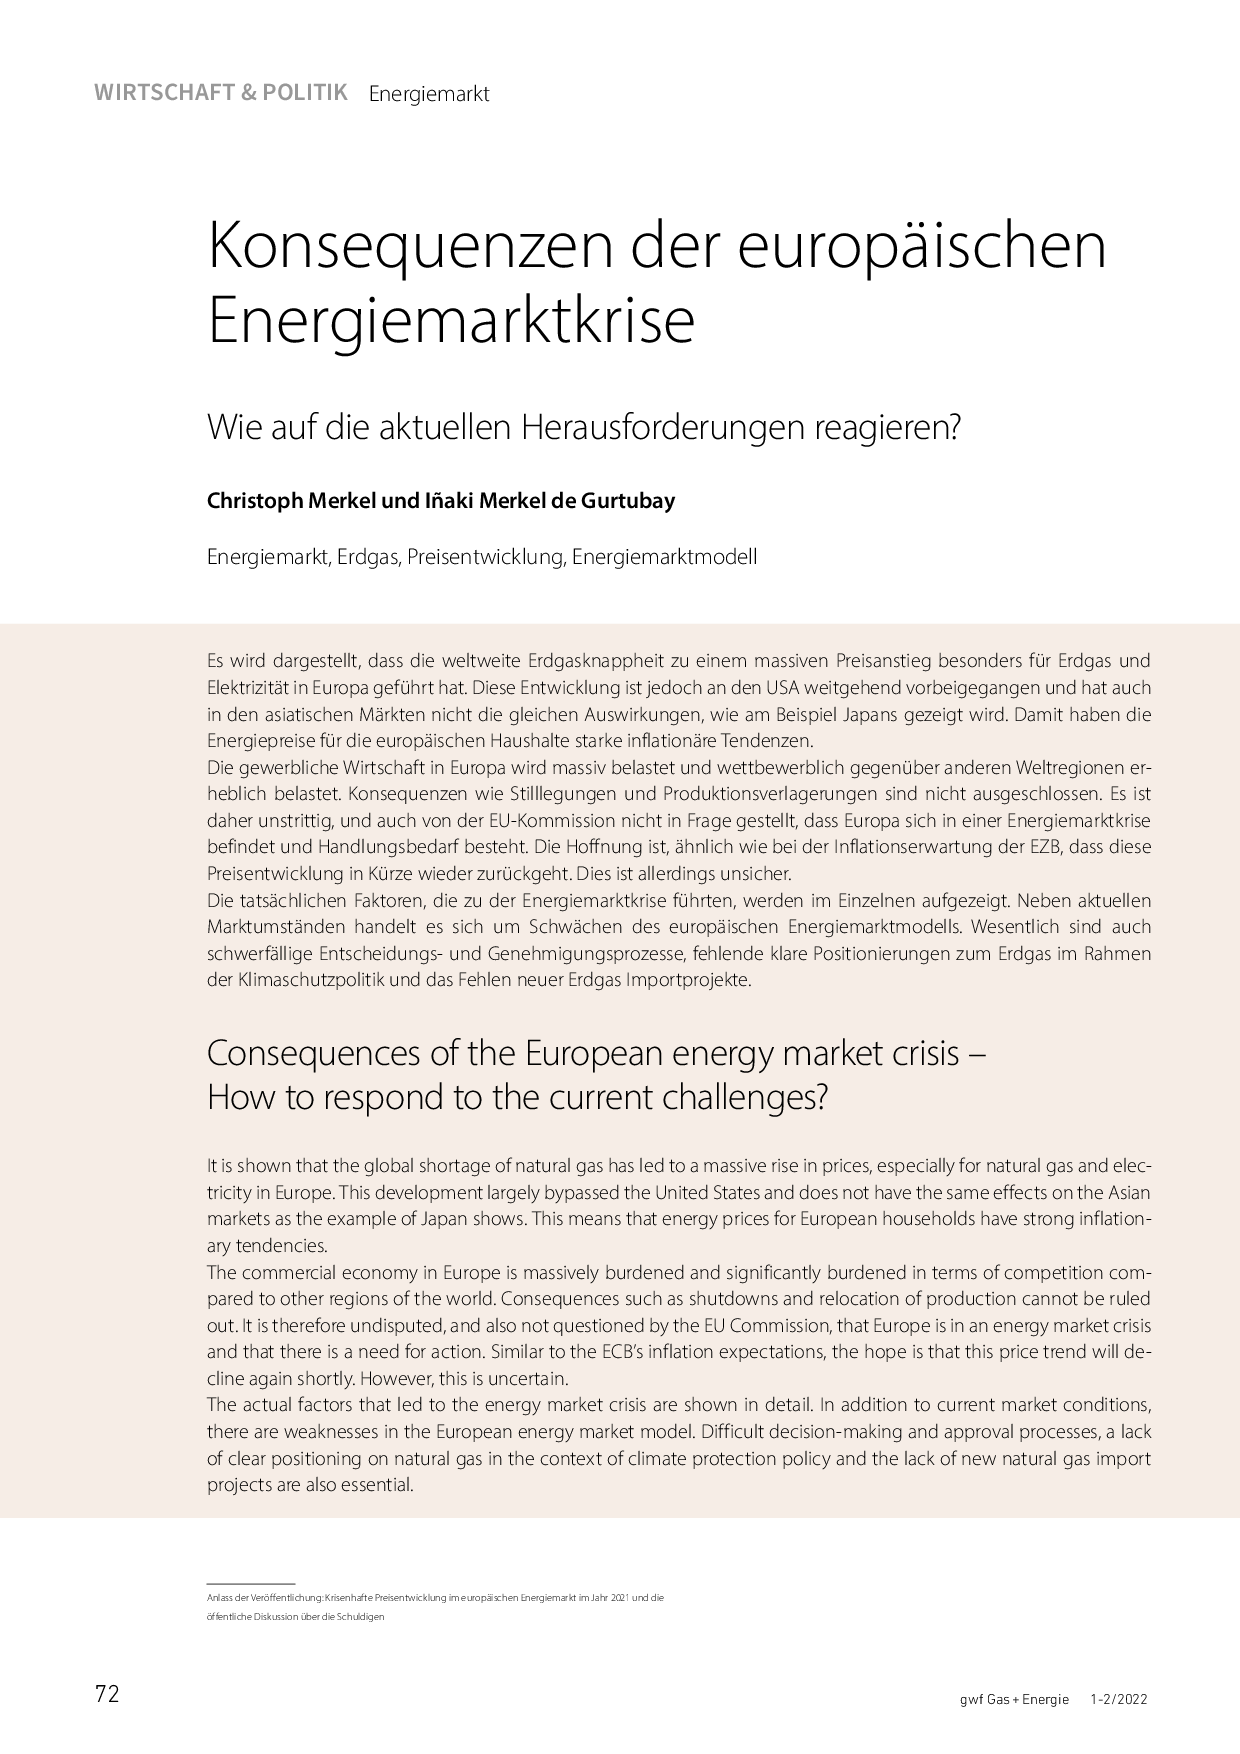 Konsequenzen der europäischen Energiemarktkrise